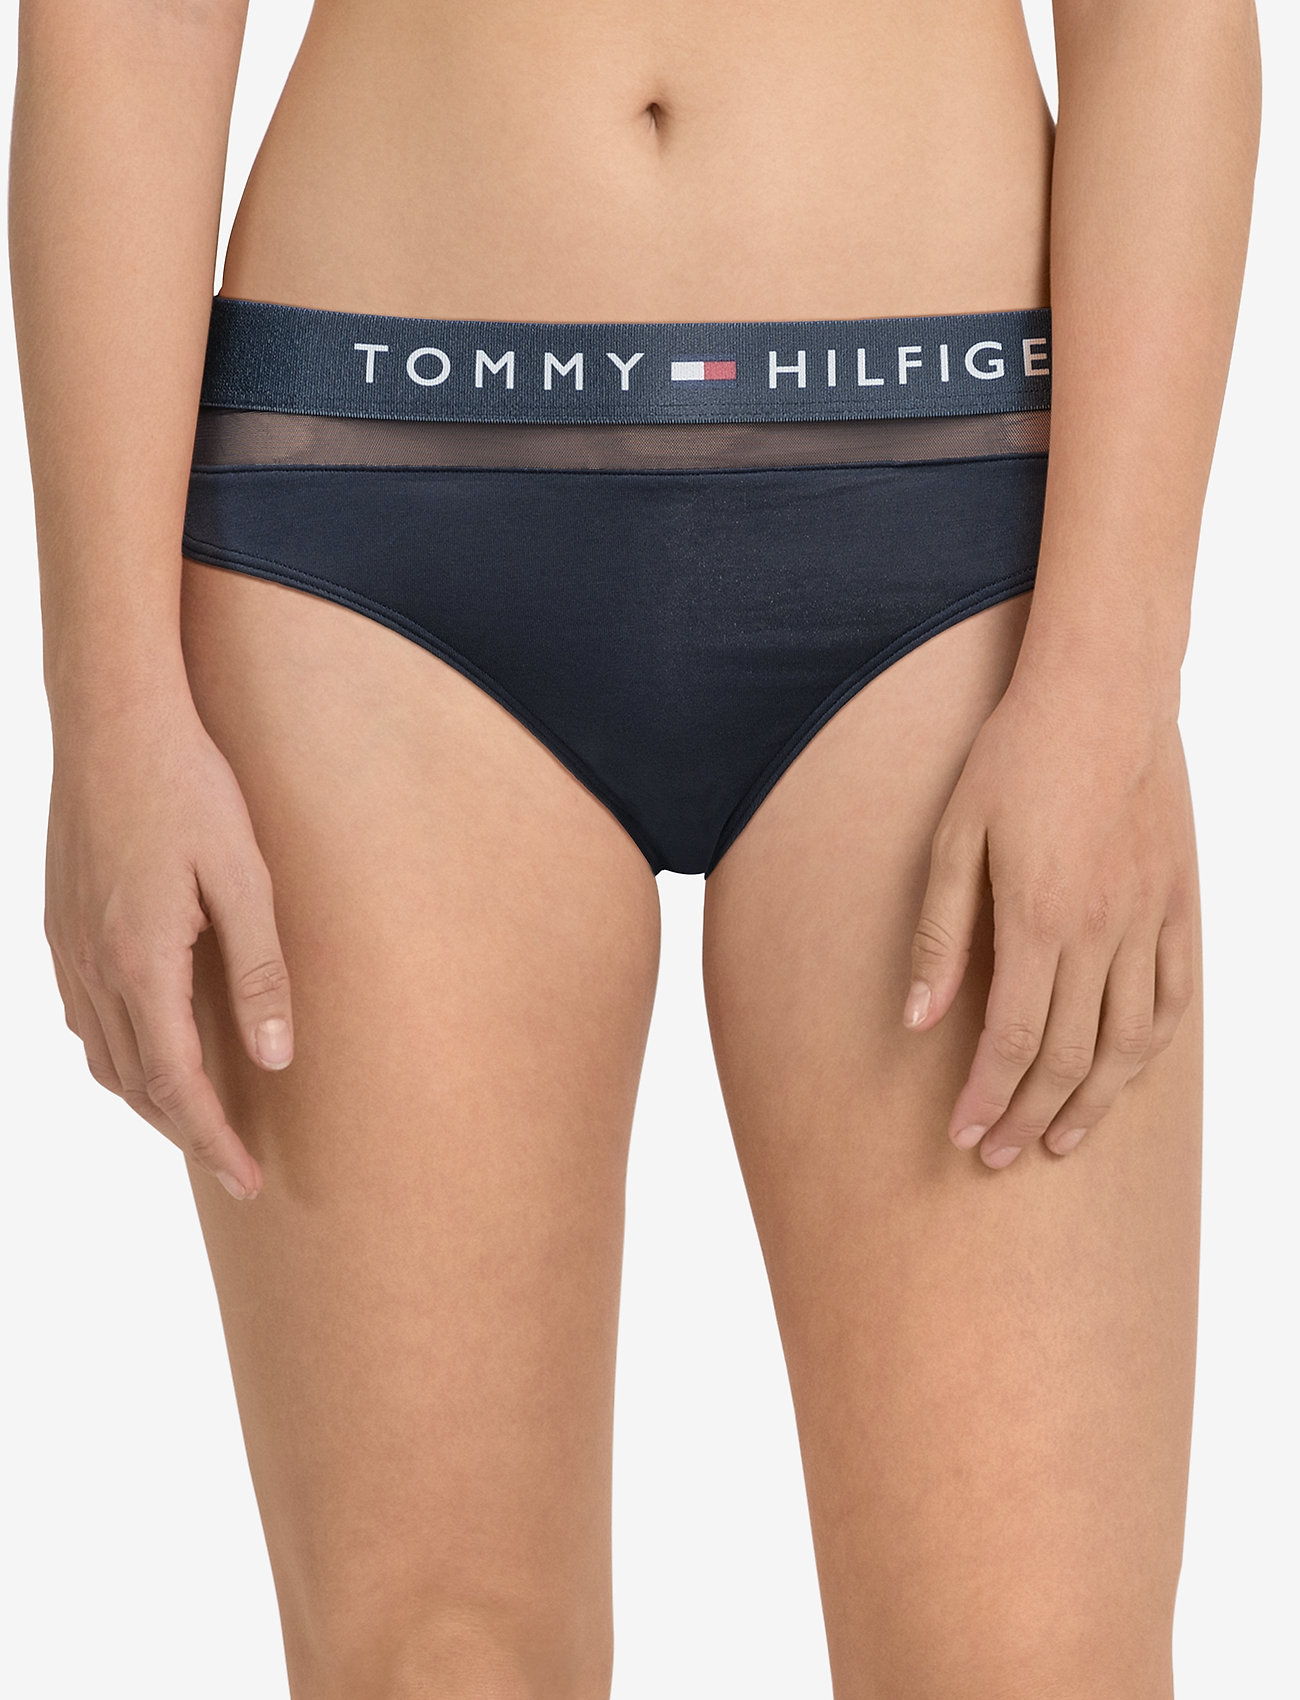 Indsigtsfuld At redigere lunge Tommy Hilfiger boxershorts – Bikini Trusser, Tanga Briefs Blå Tommy Hilfiger  til dame i Blå - Pashion.dk